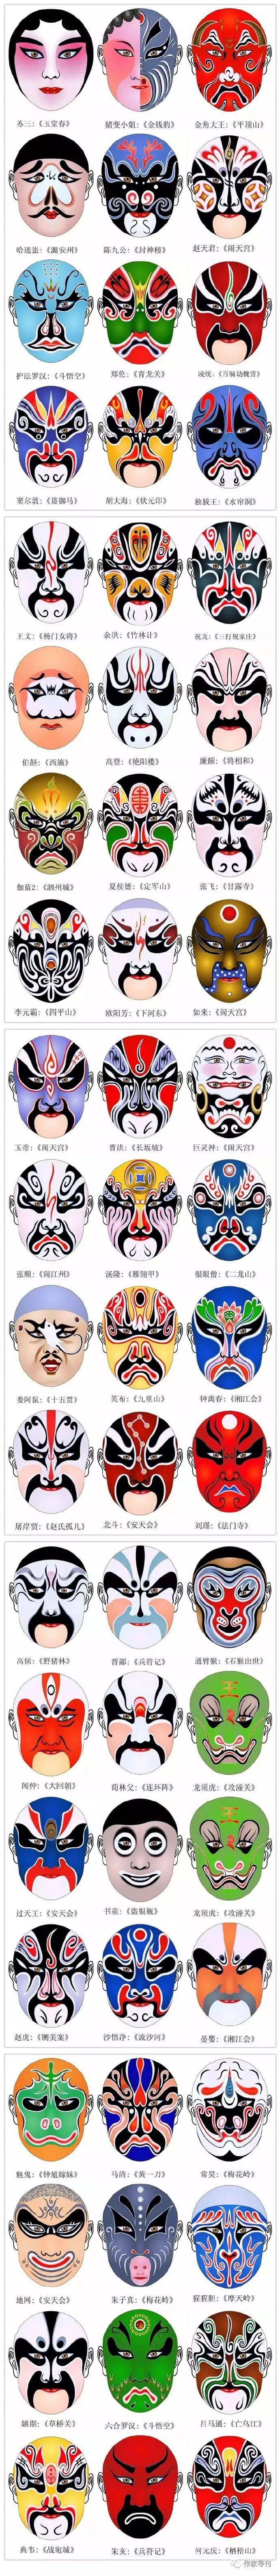 中国戏剧脸谱艺术300张收藏起来慢慢看